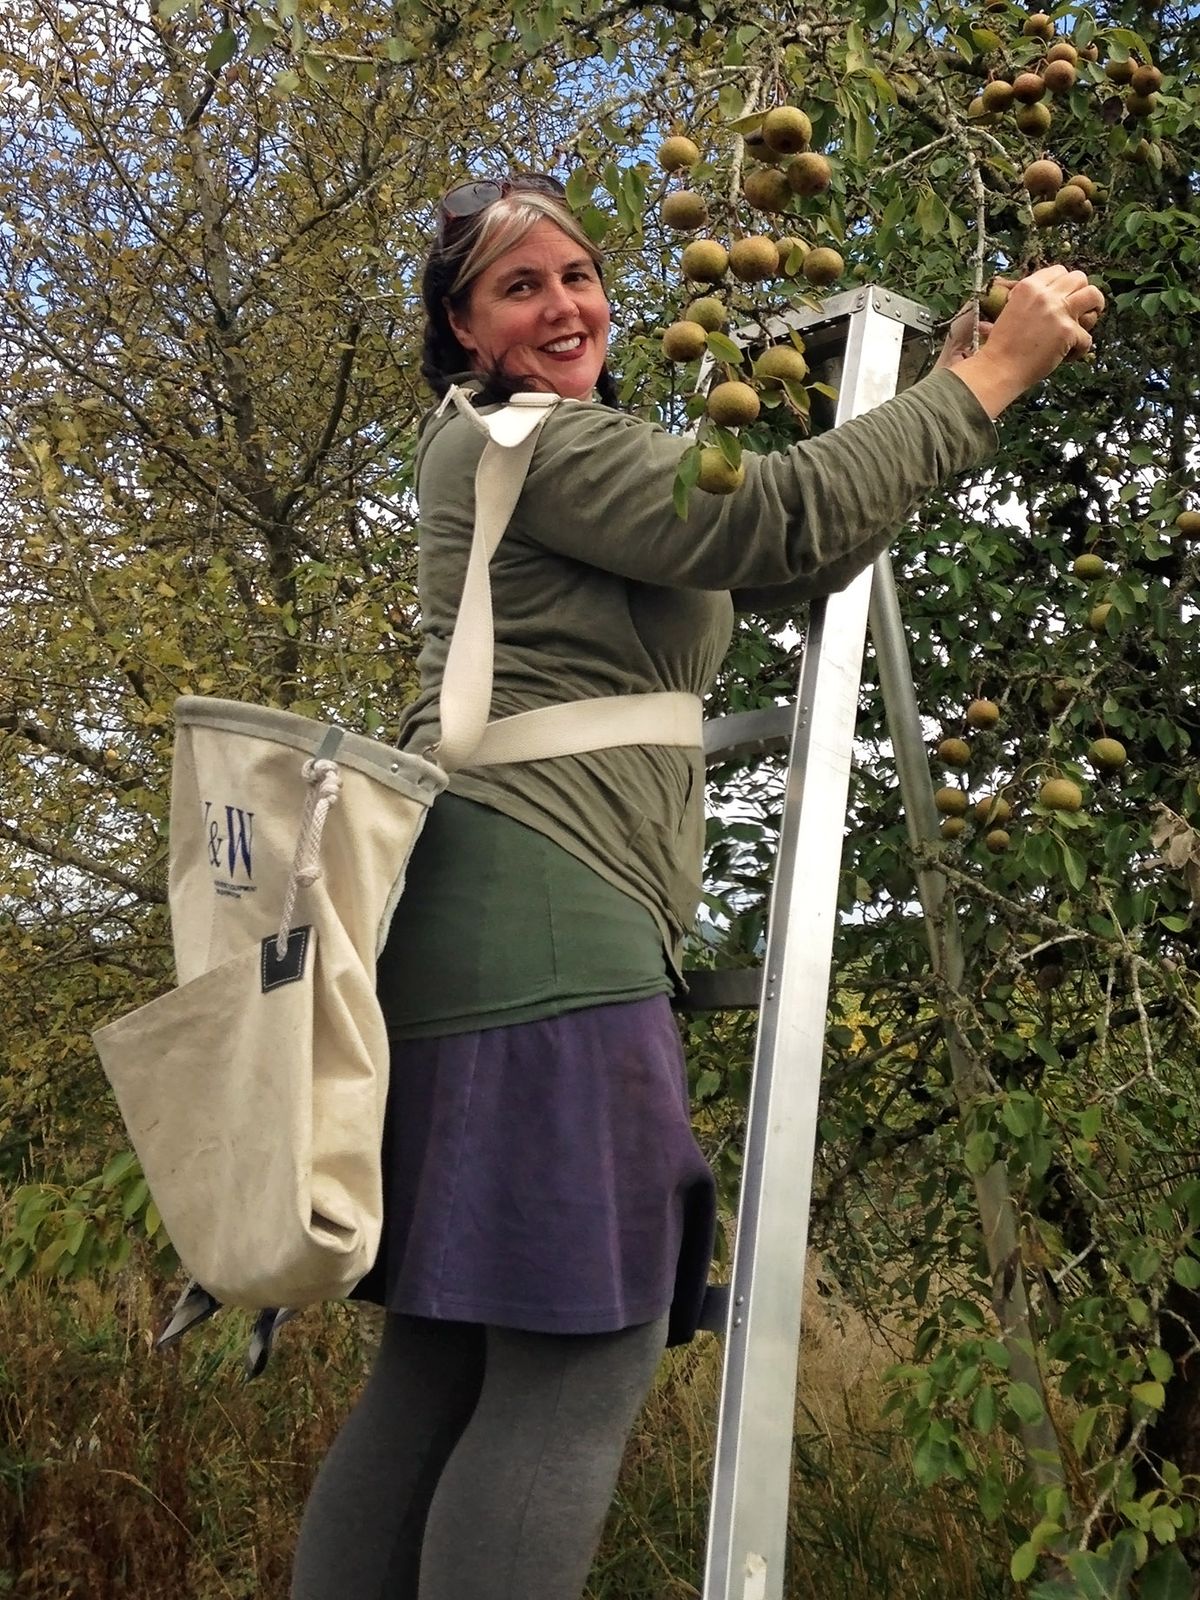 אישה על סולם קוטפת תפוחים ירוקים כהים, שק על גבה